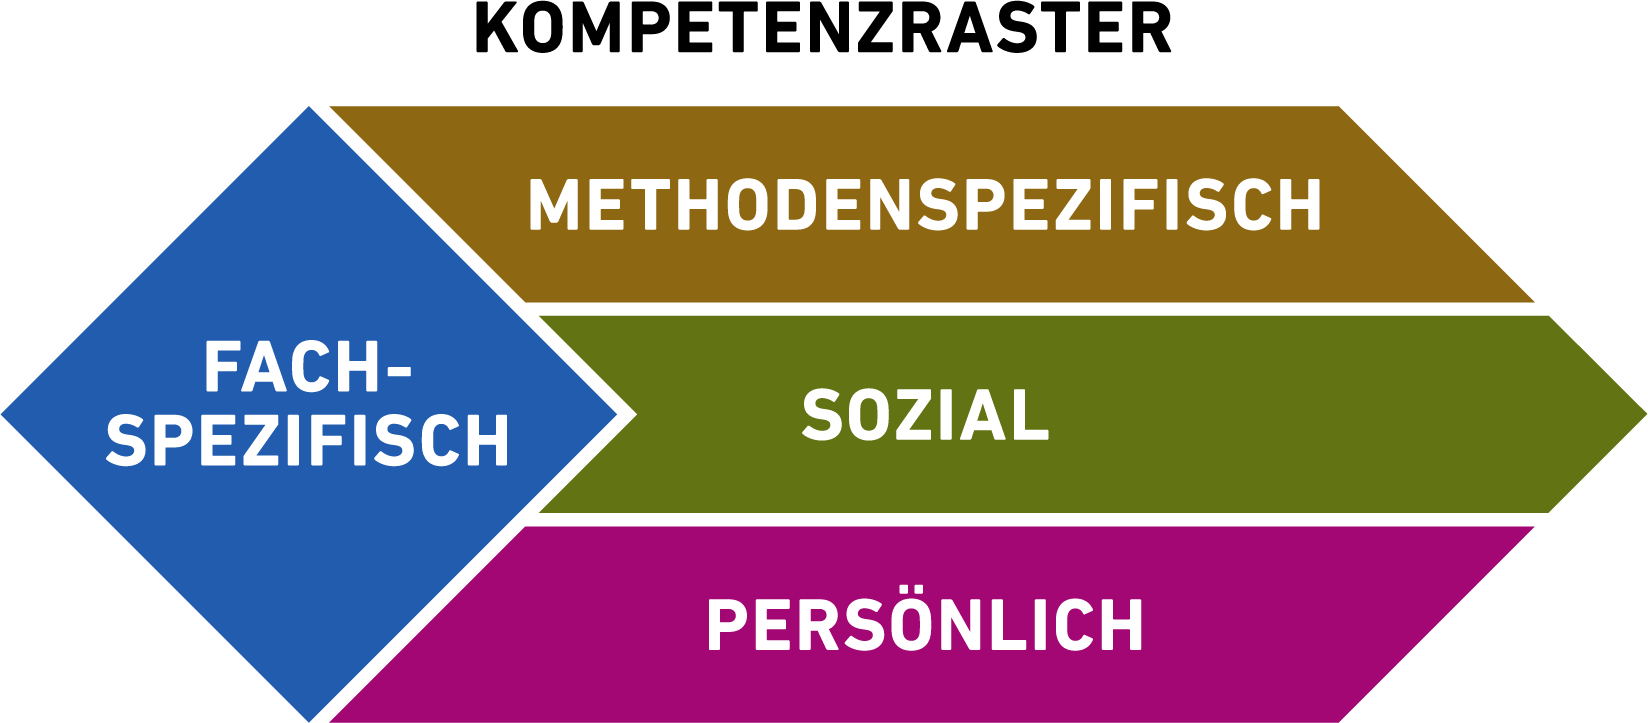 Grafische Darstellung des ETH-Kompetenzrasters. Der Rahmen wird in Form einer Raute dargestellt, mit fachspezifischen Kernkompetenzen, die durch drei überfachliche Kompetenzbereiche unterstützt werden. Dabei handelt es sich um Methoden-, soziale und personale Kompetenzen. Alle vier Kompetenzbereiche sind in einer anderen Farbe dargestellt.